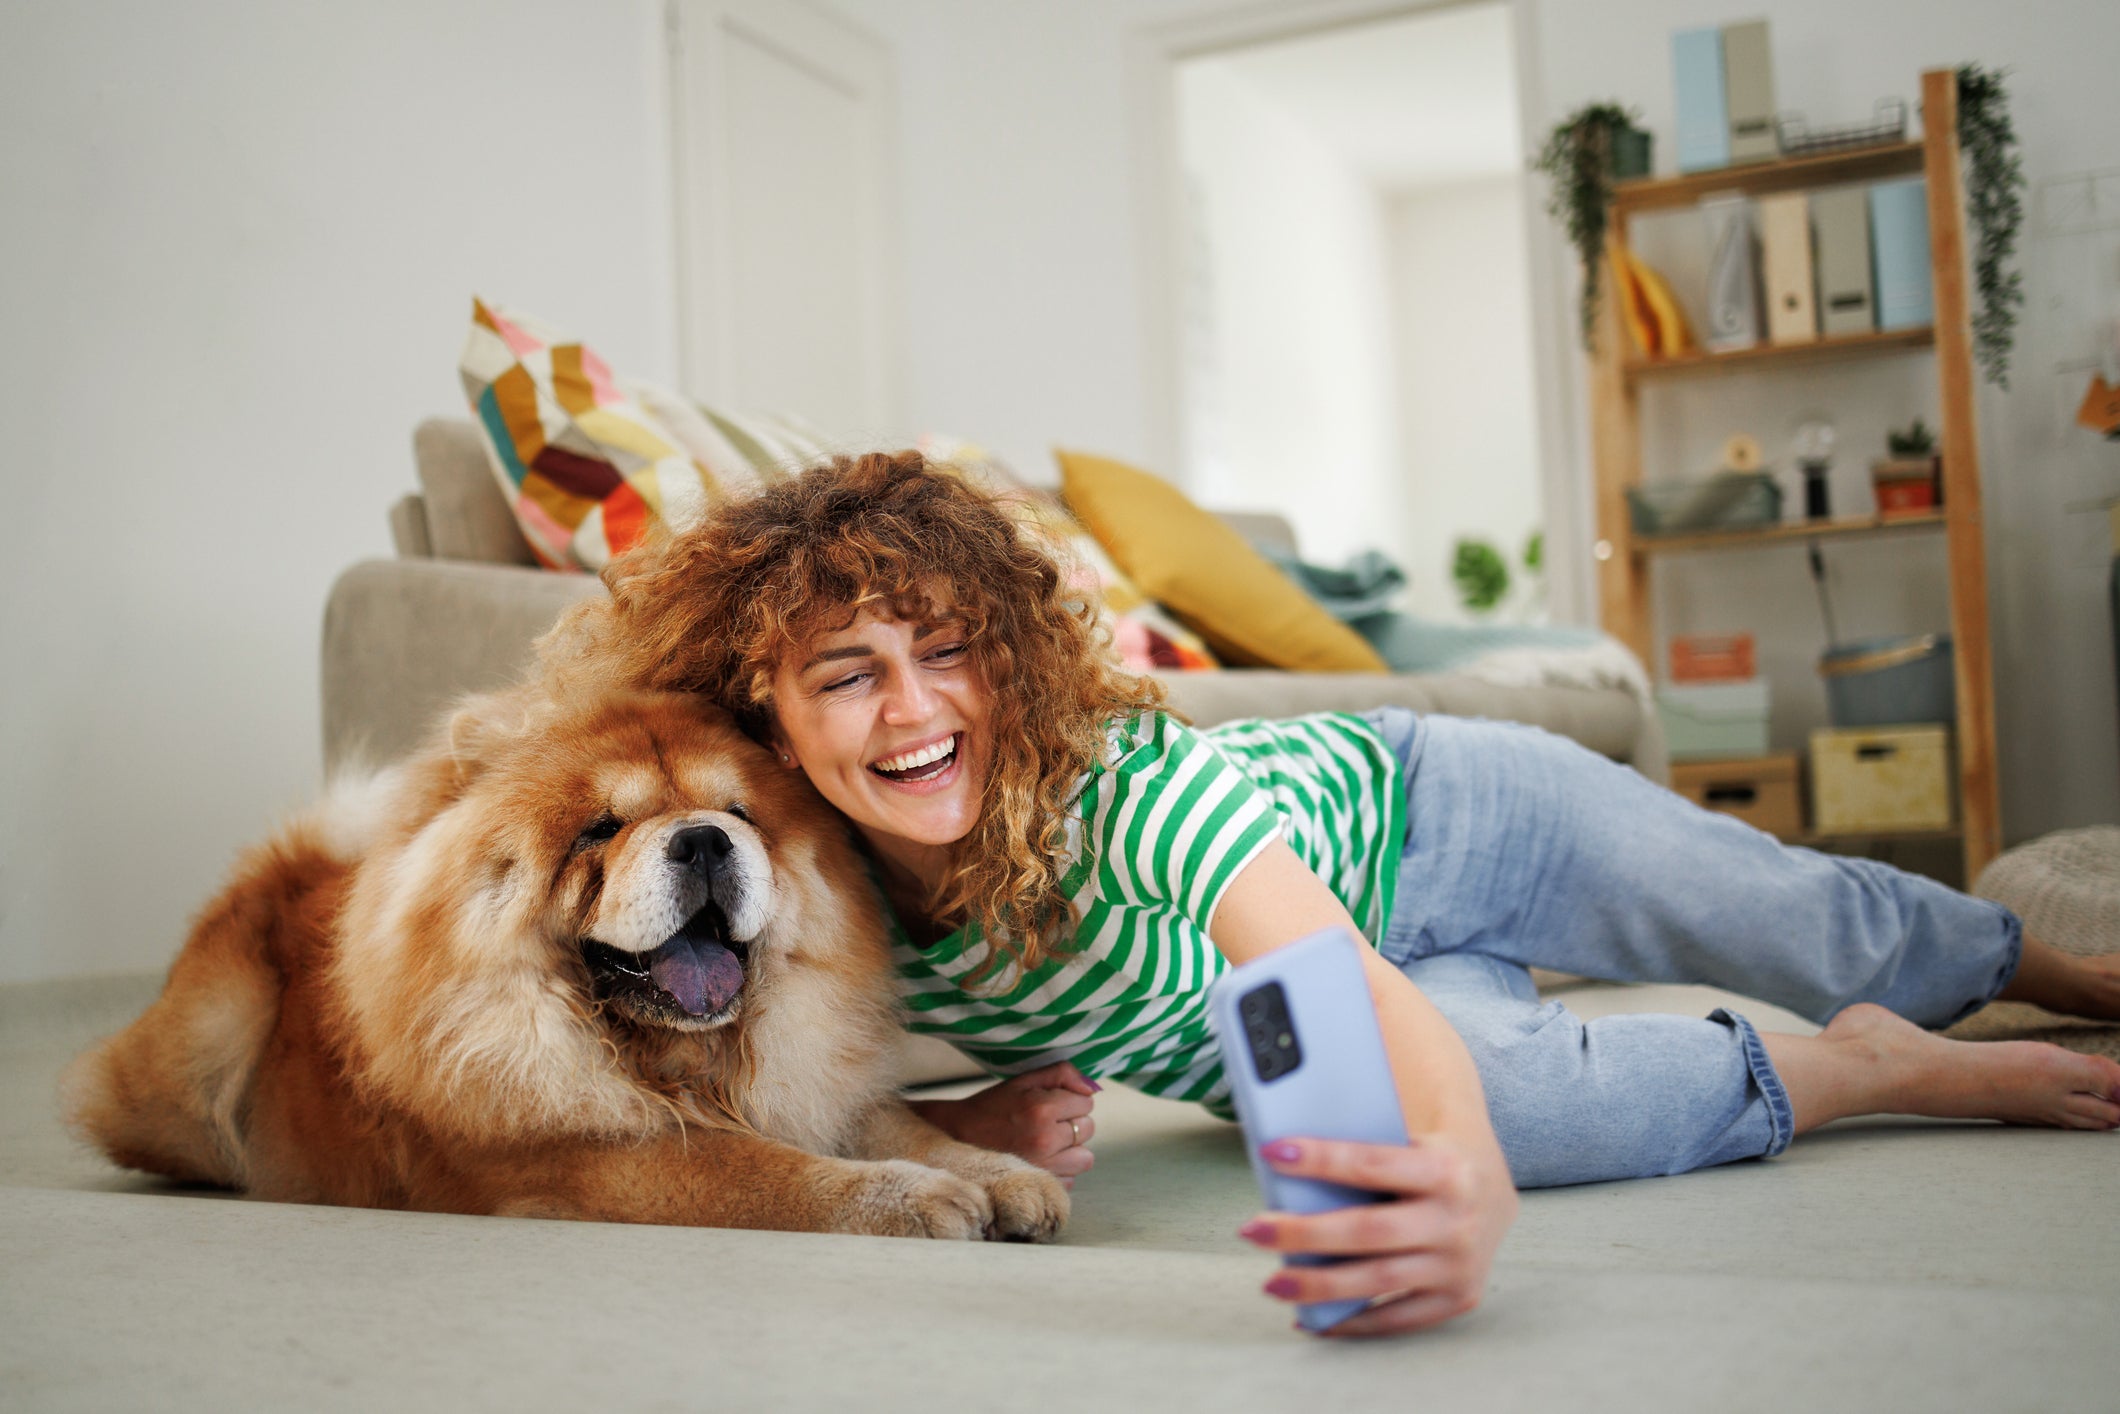 Tutora tirando "selfie" com seu cachorro Chow Chow, ambos deitados no chão de sala de estar